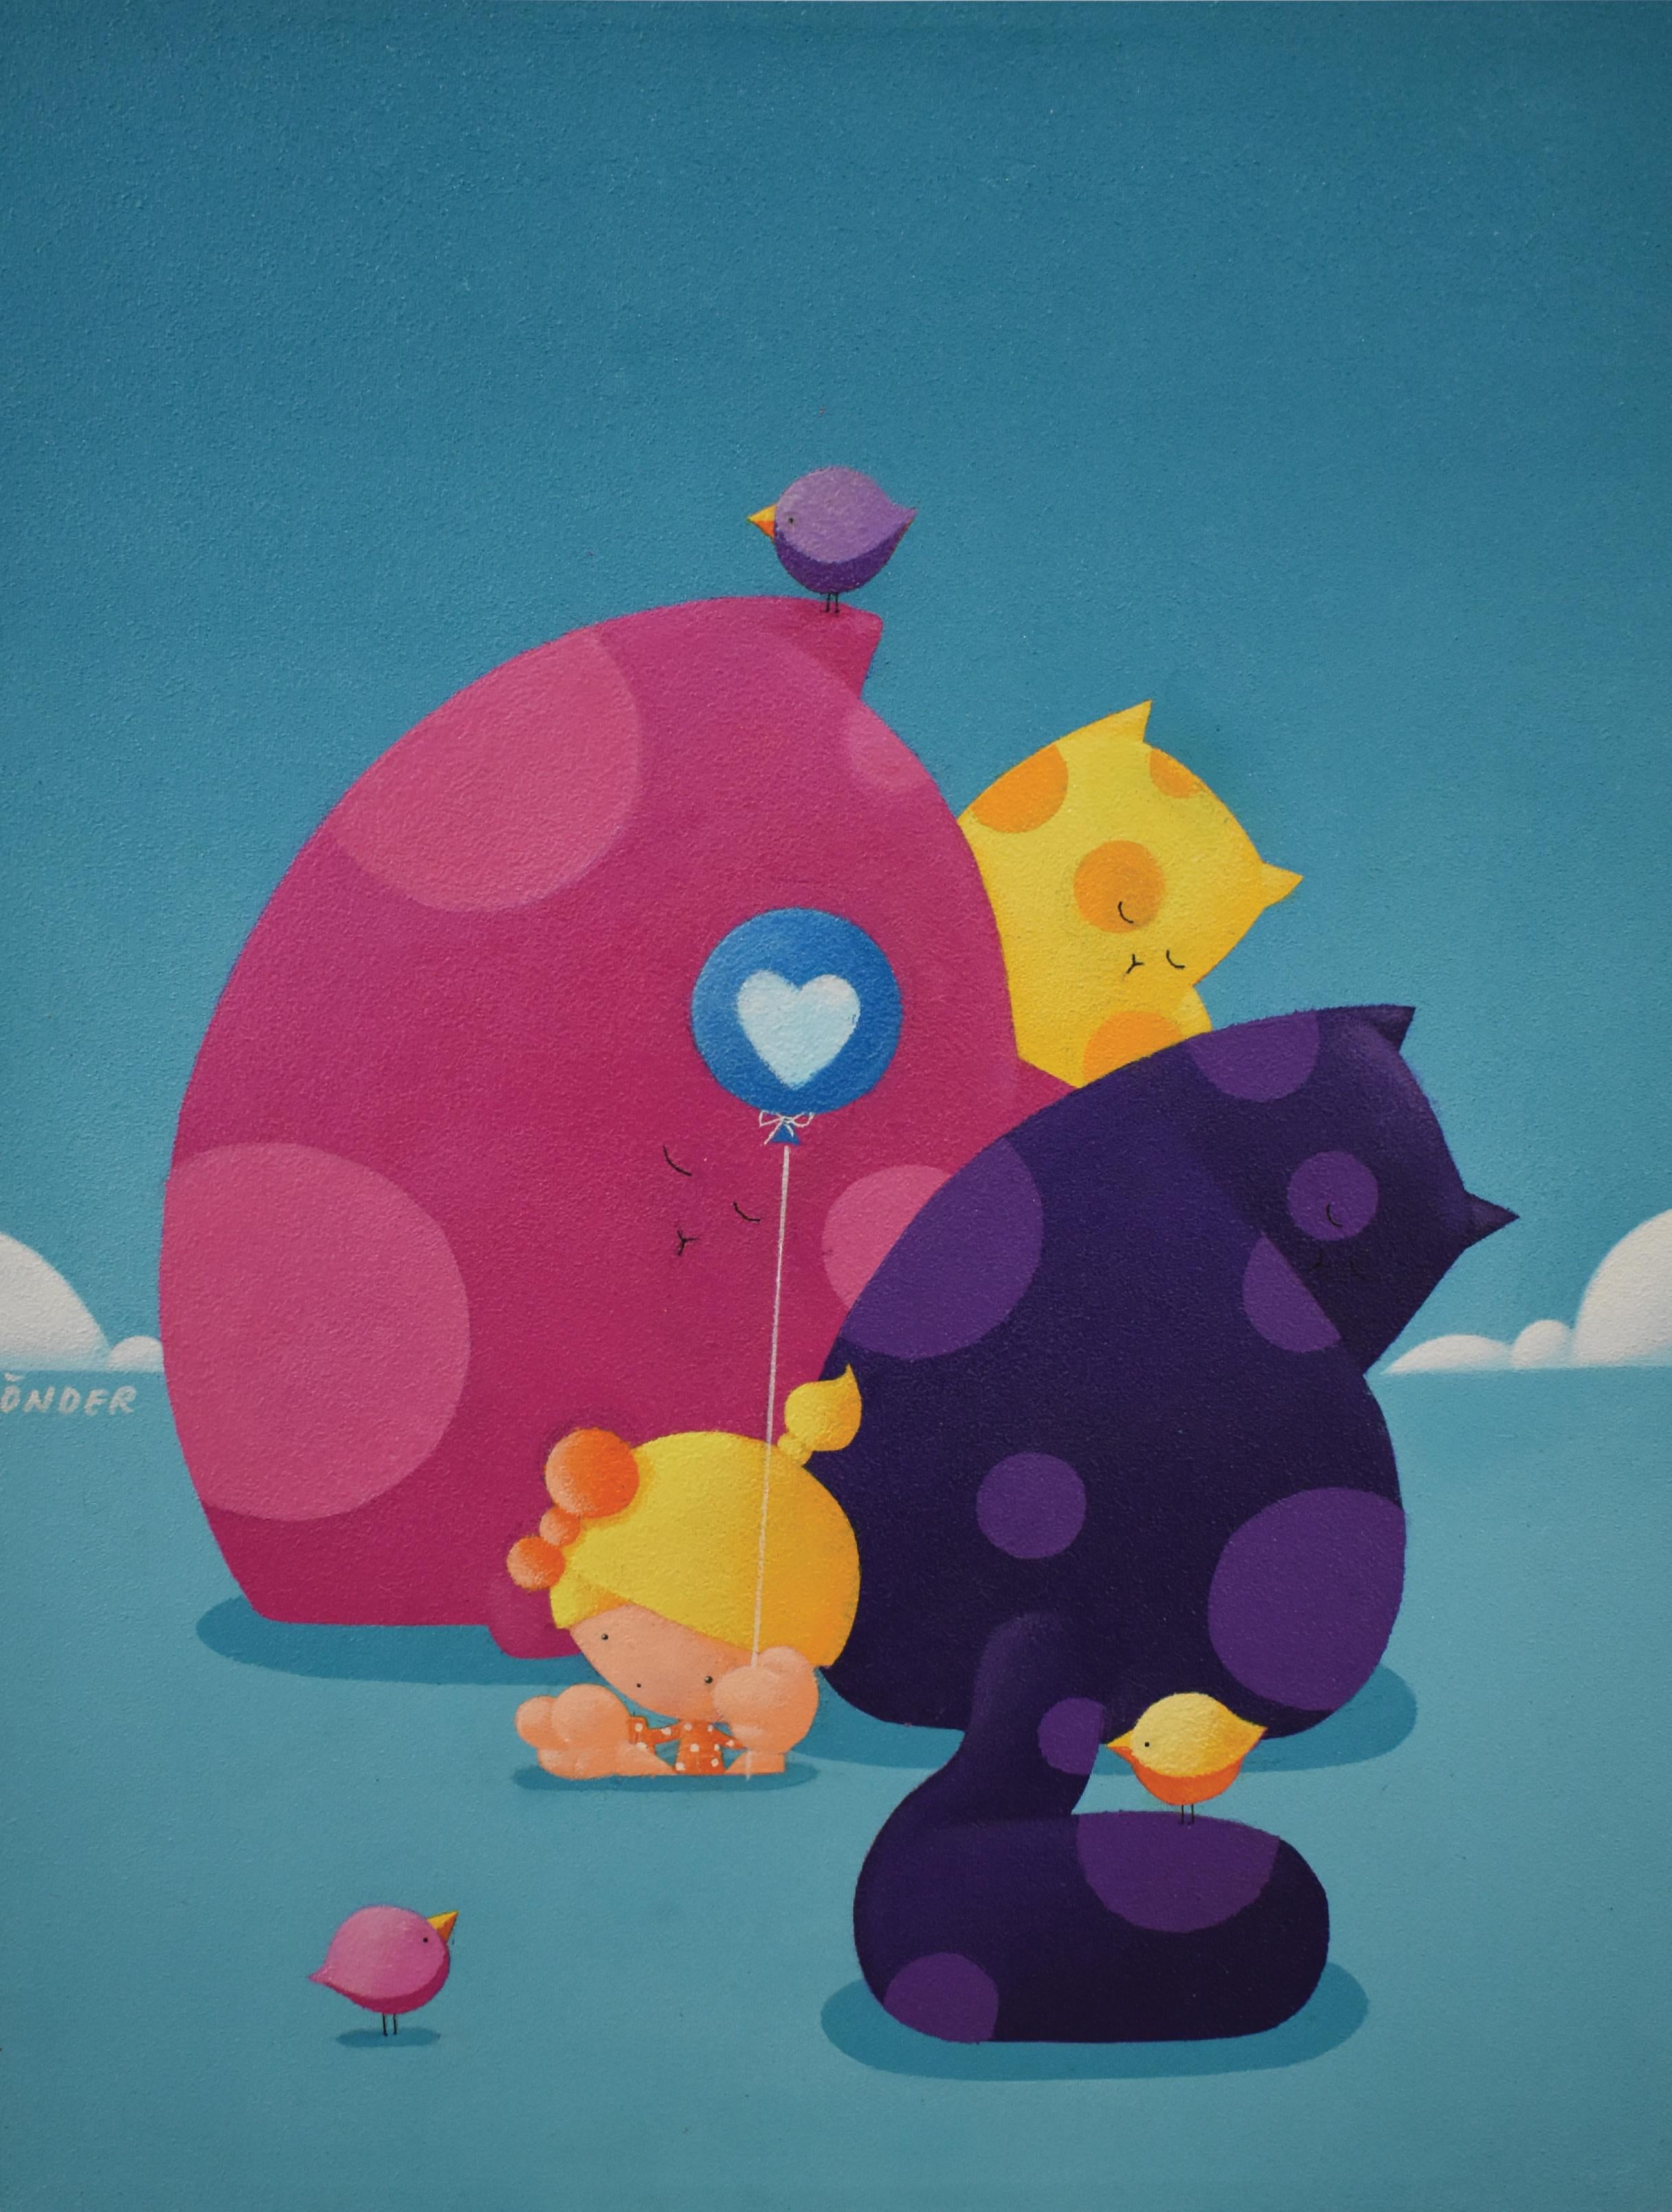 Mali Onder Animal Painting – Trust, farbenfrohe Pop-Art, Freundschaft mit Kindern und Katzen, Träume, Freiheit, Glück